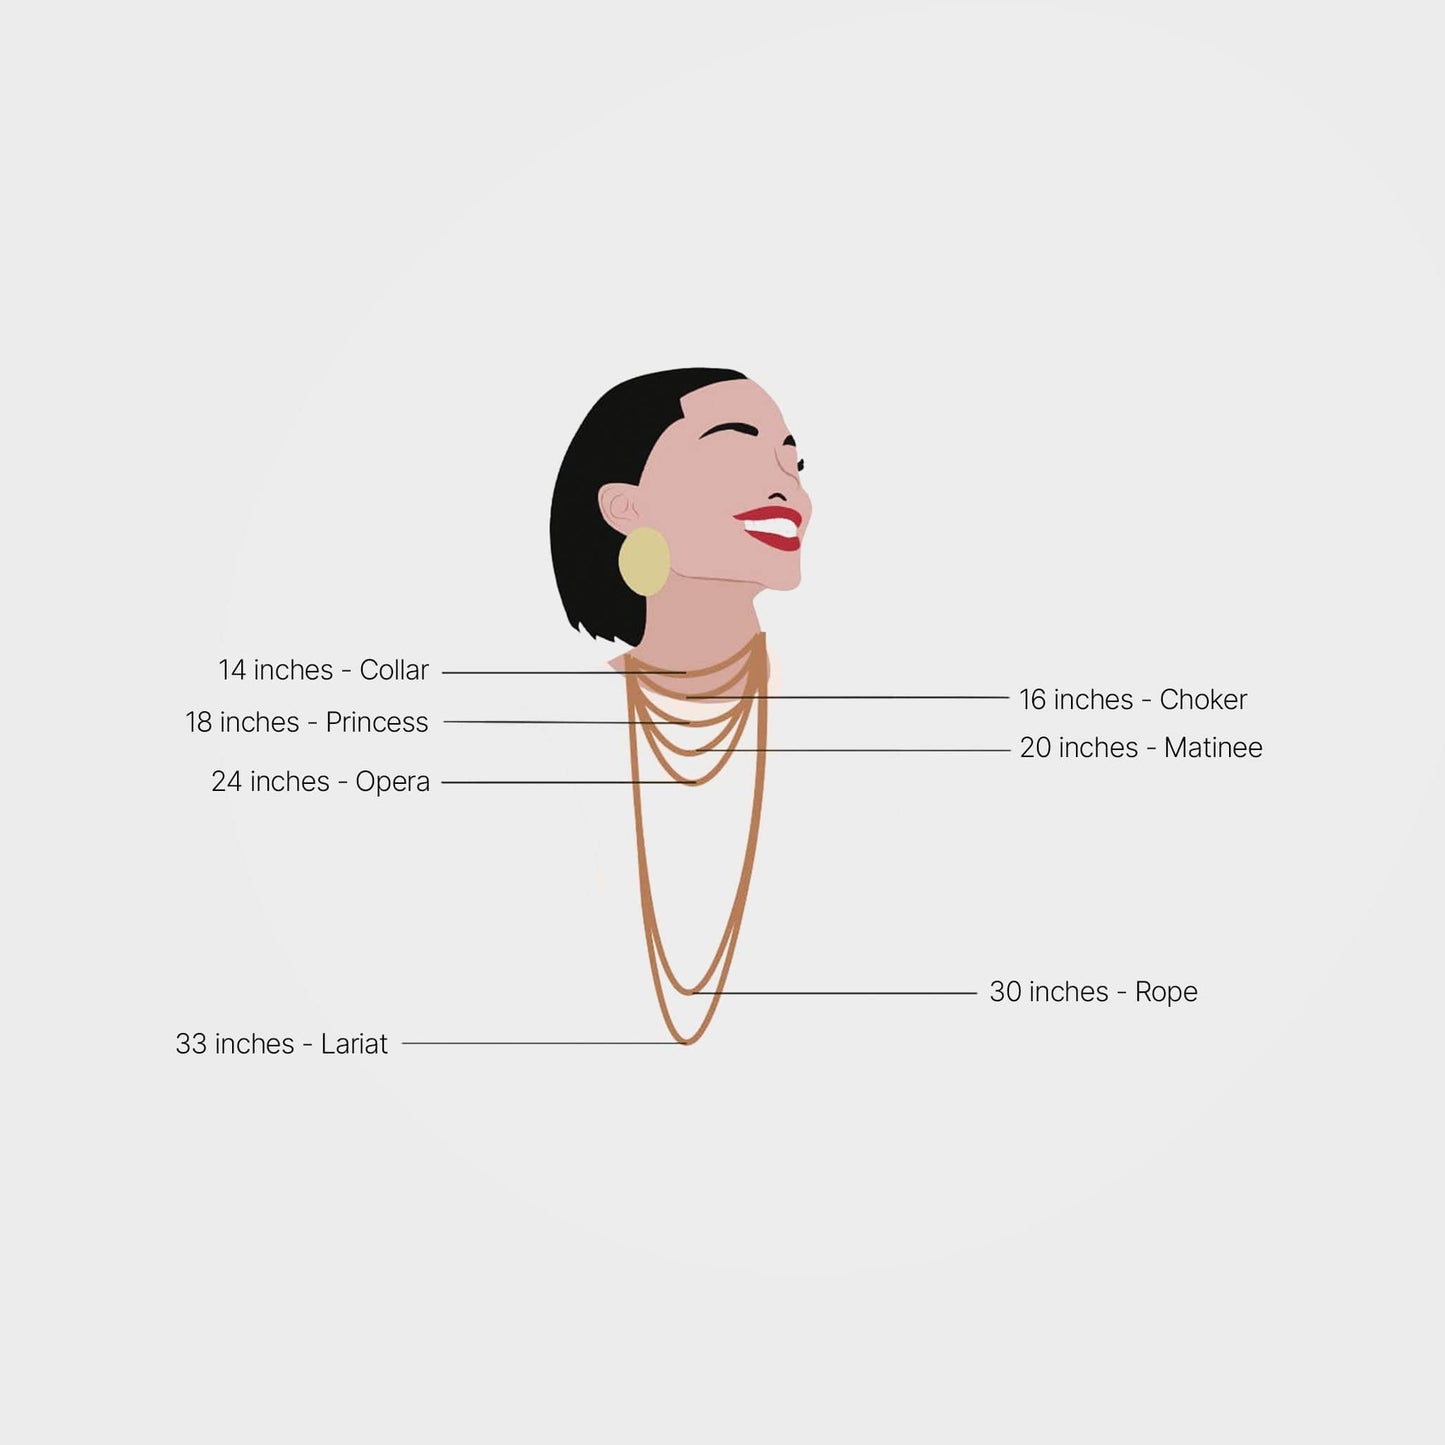 Halsband med hängsmycke av rå turkos - smycken med helande kristaller | By Lunar James